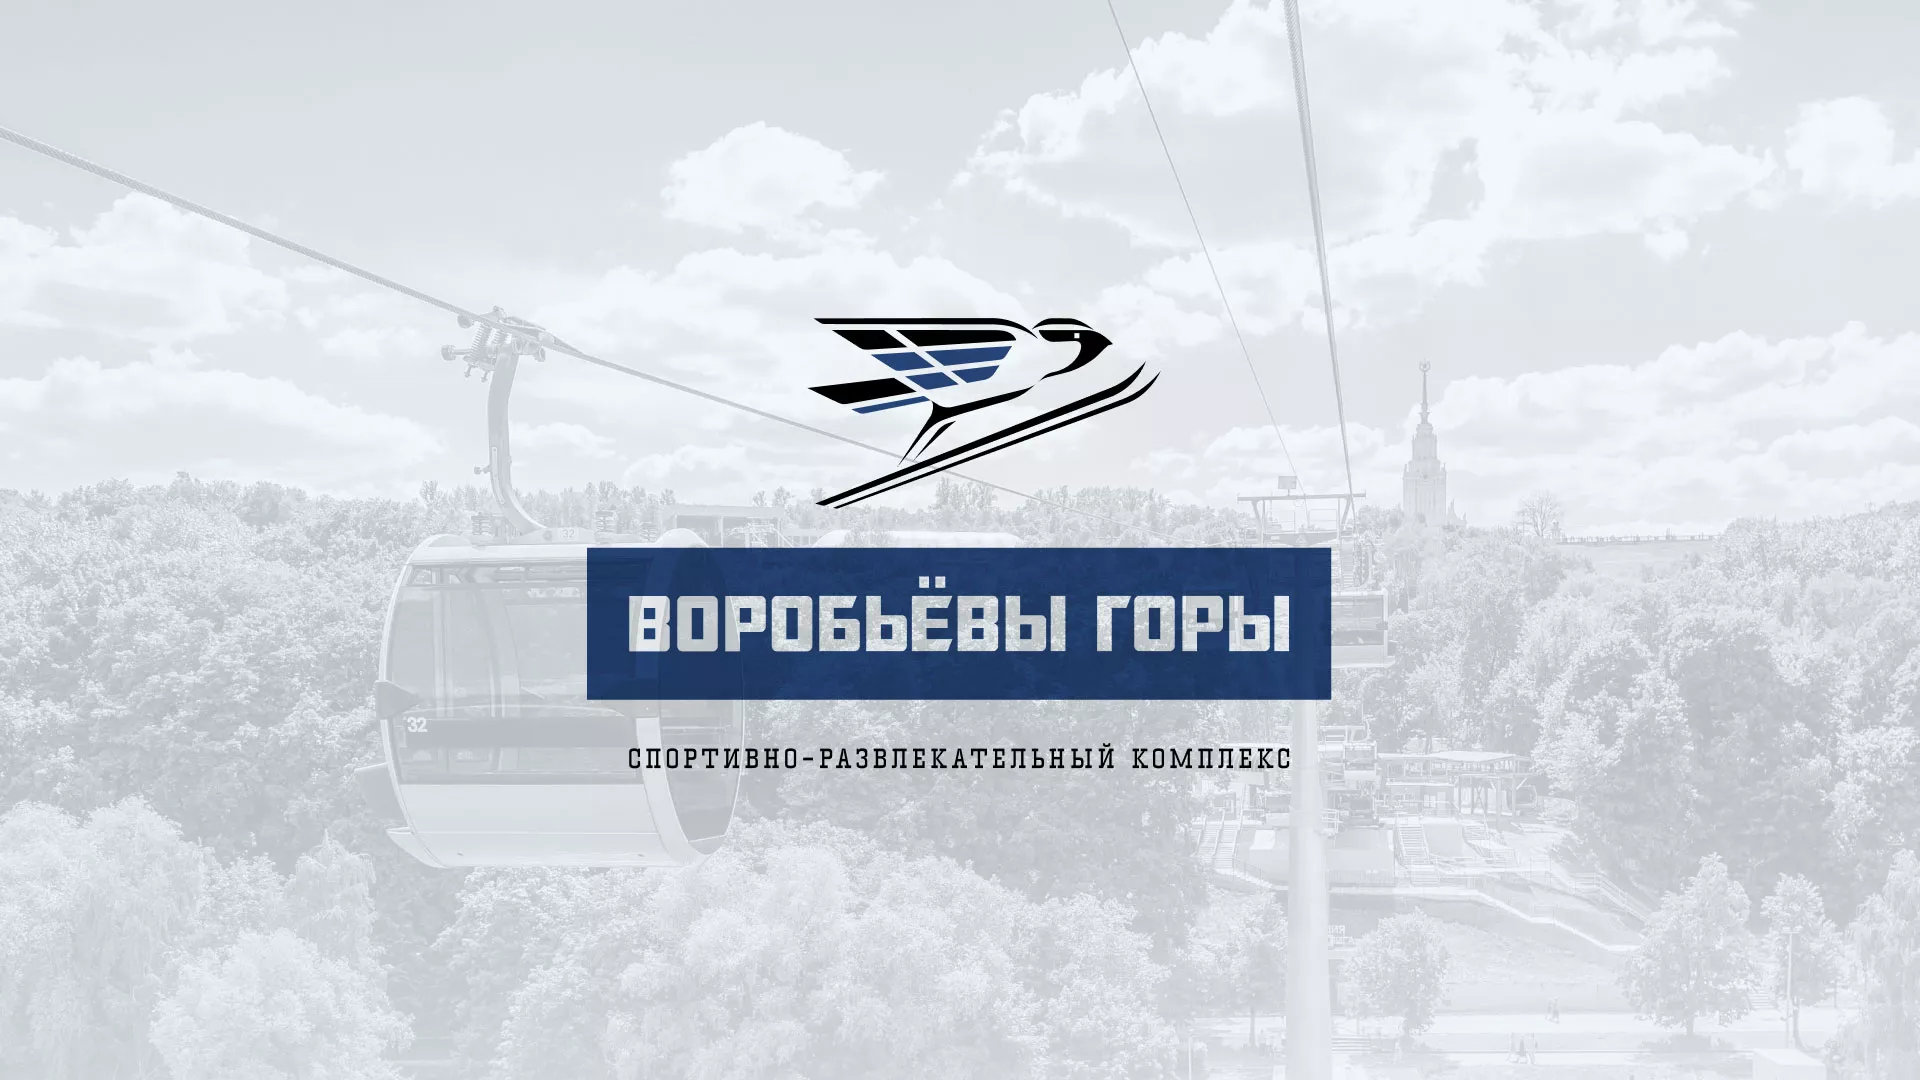 Разработка сайта в Богородицке для спортивно-развлекательного комплекса «Воробьёвы горы»